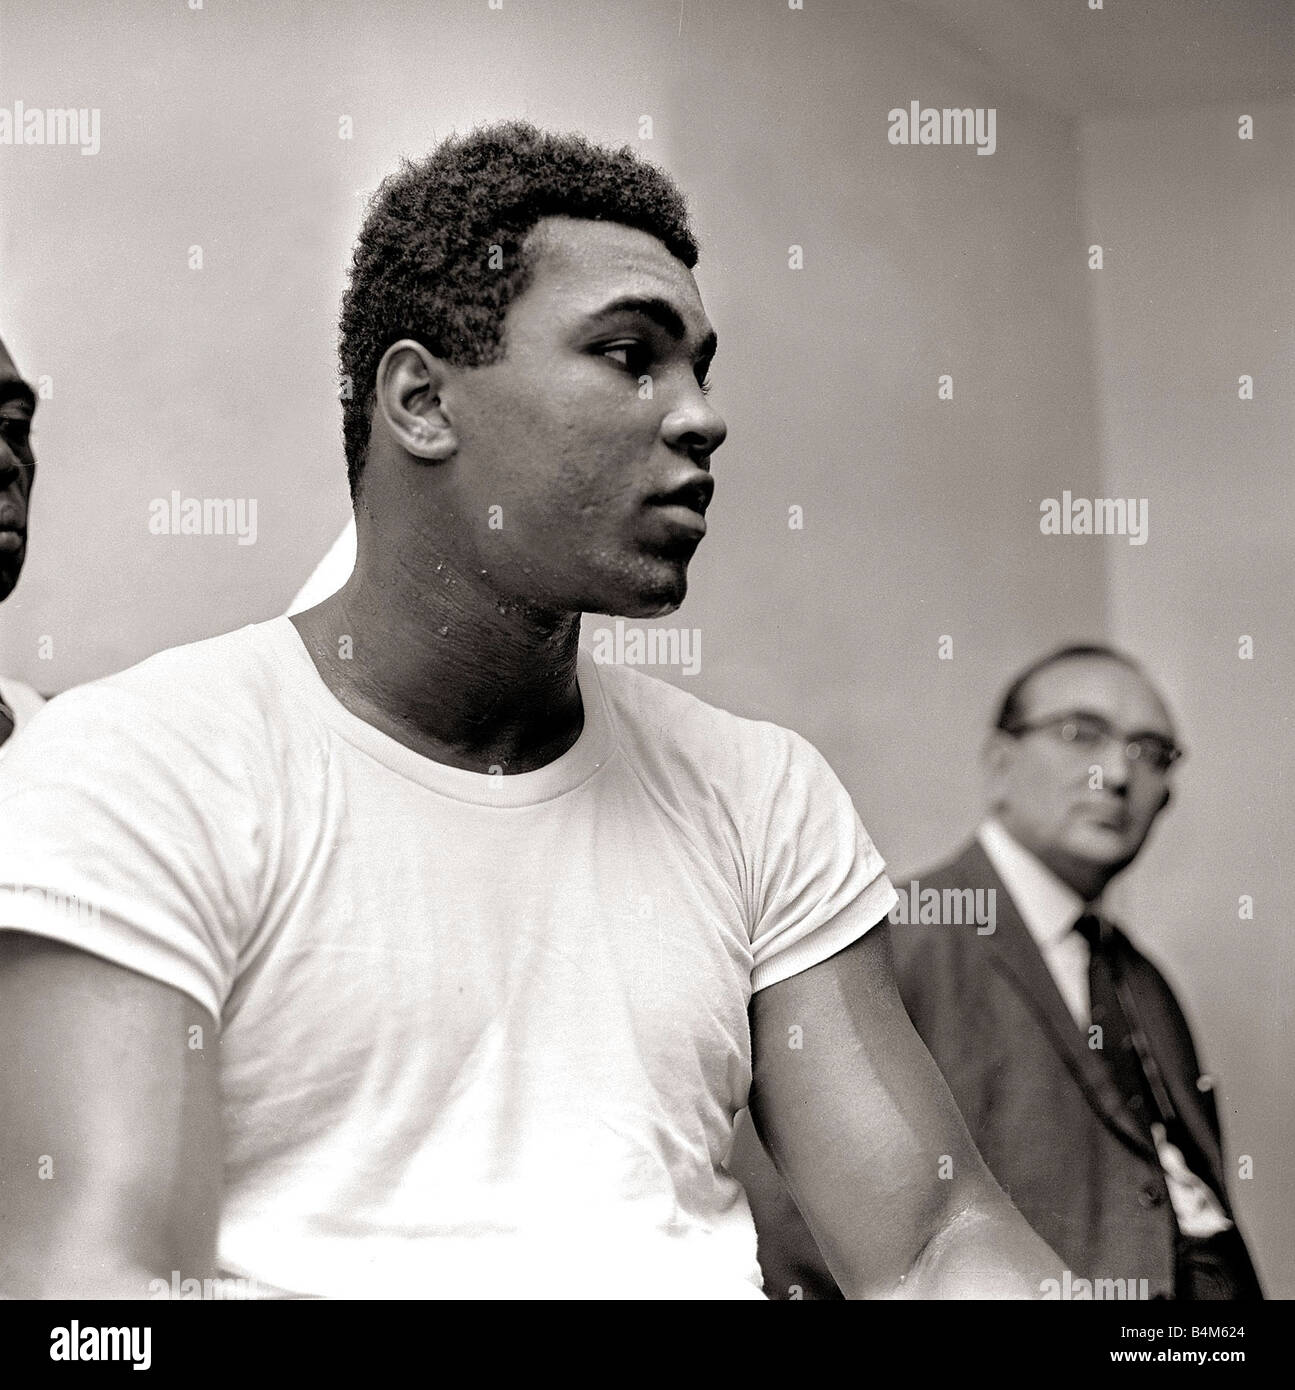 https://c8.alamy.com/comp/B4M624/cassius-clay-august-1966-in-training-boxing-1960s-muhammad-ali-B4M624.jpg